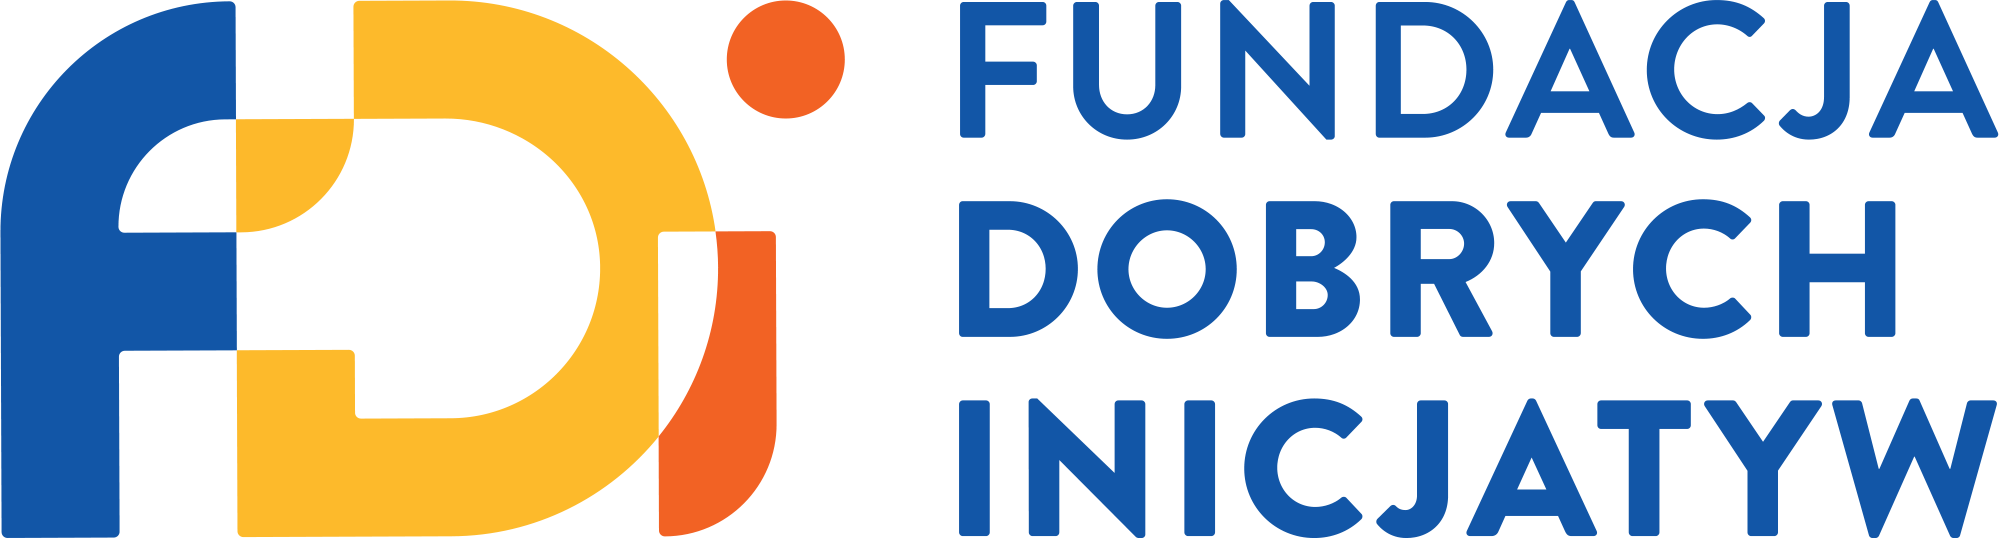 Fundacja Dobrych Inicjatyw 